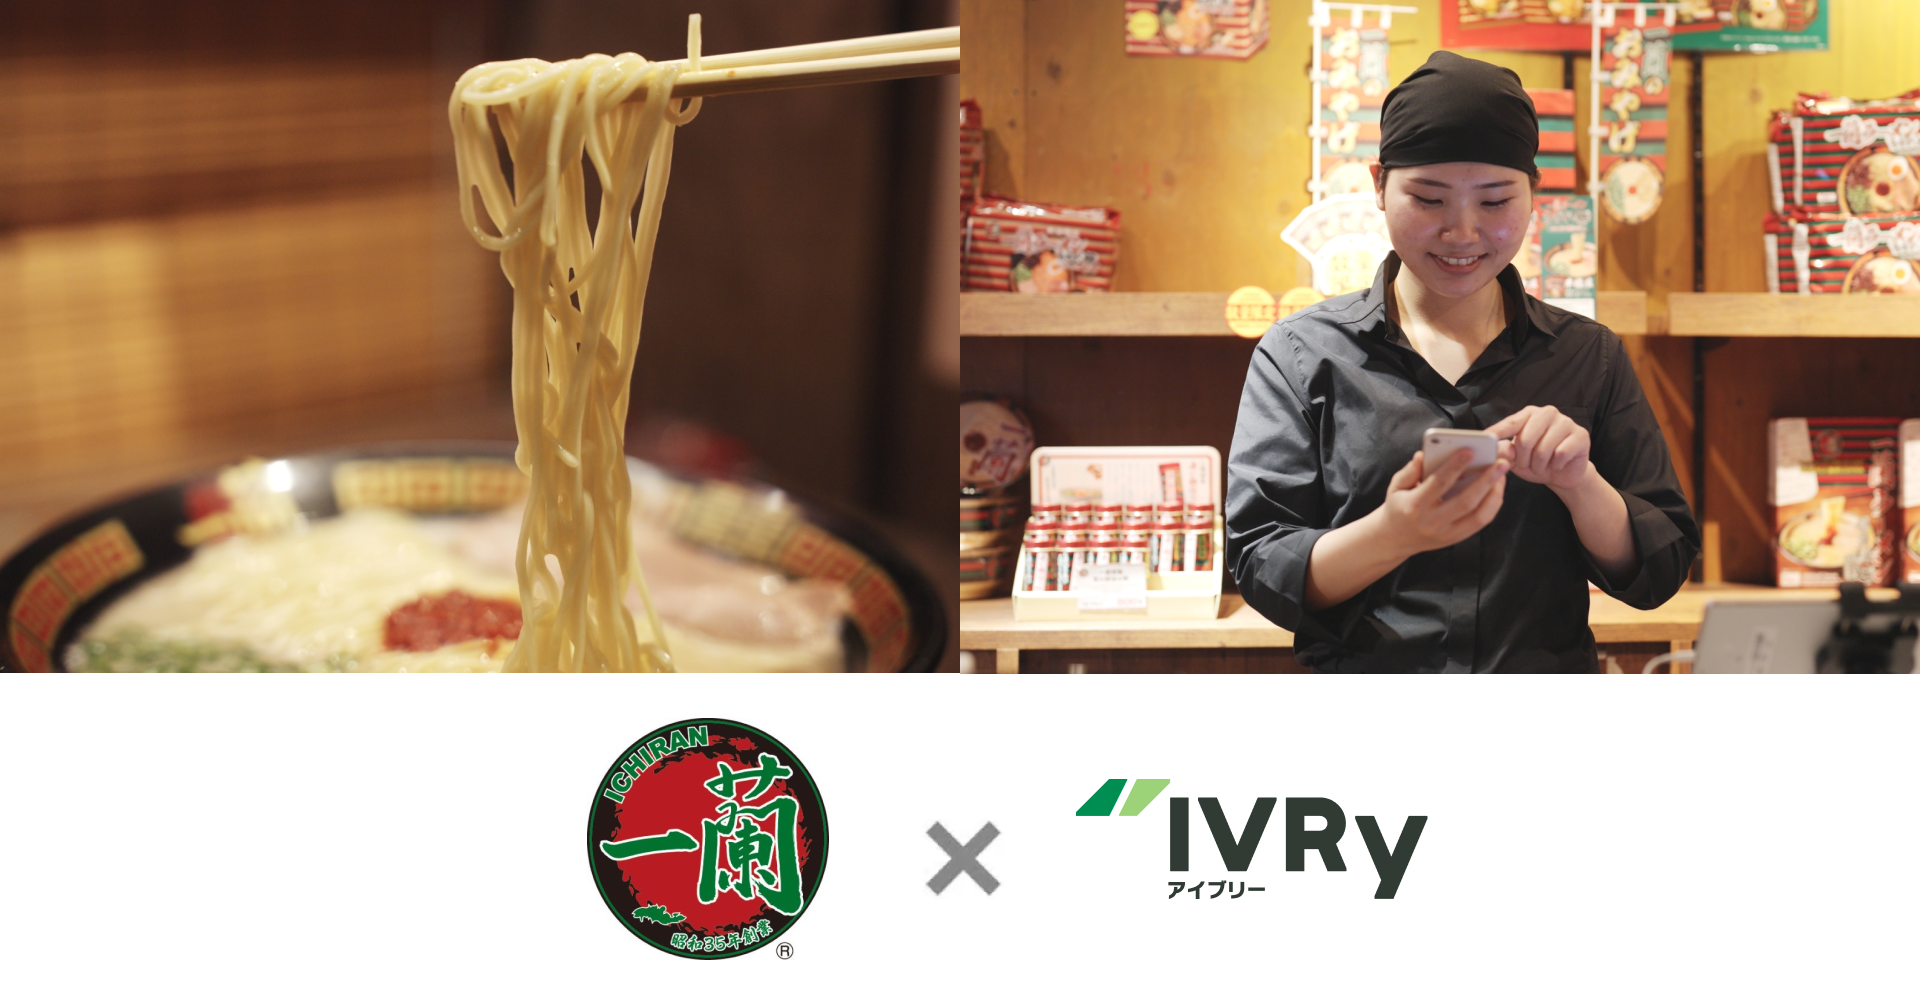 一蘭が電話自動応答サービス「IVRy」を国内全78店に導入。業務効率�化に向けた電話DXの取り組みを推進